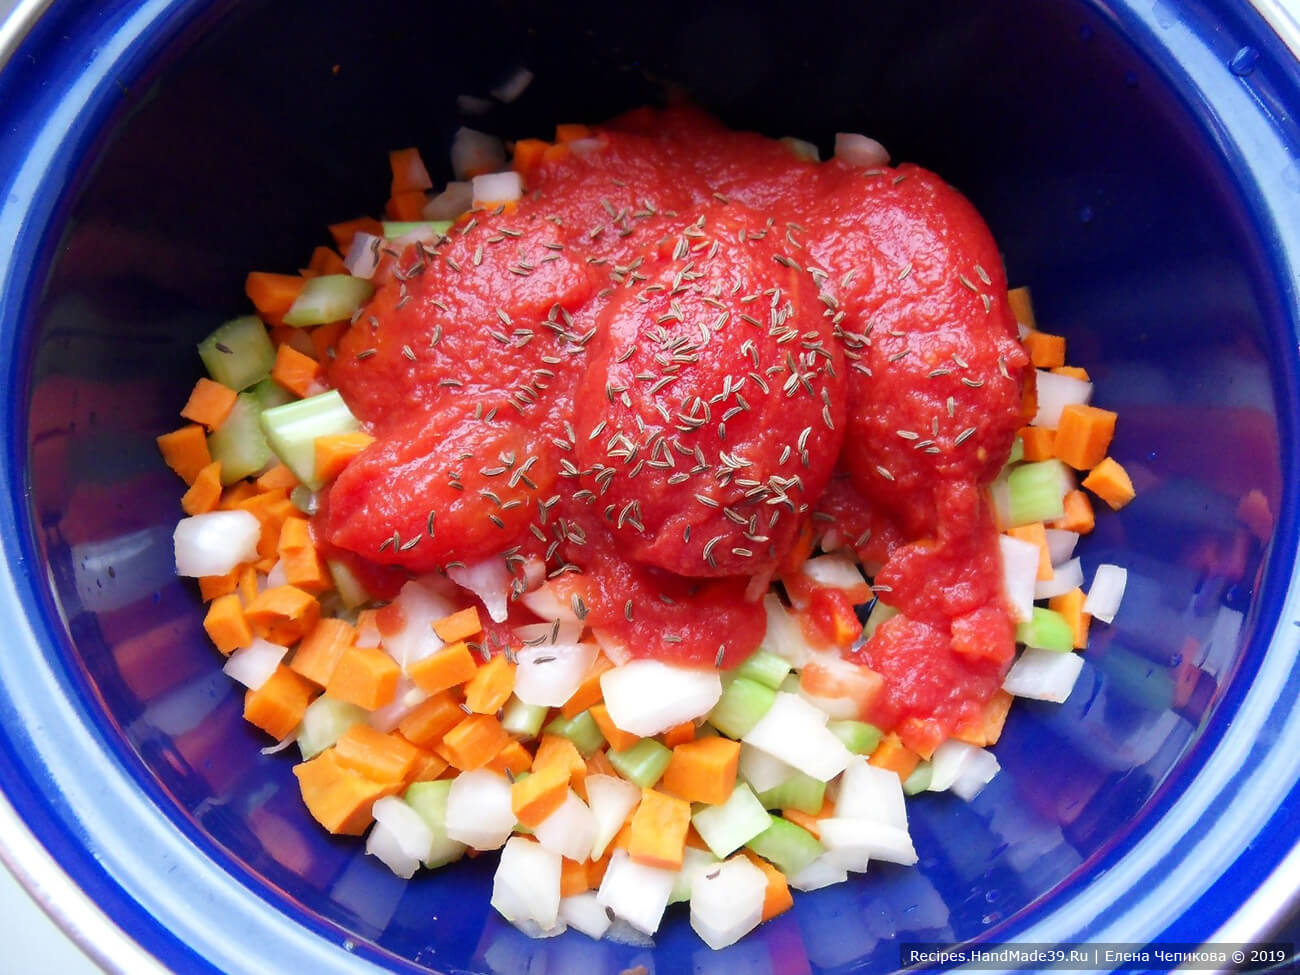 Добавить к морковно-луково-сельдерейной смеси томаты в собственном соку